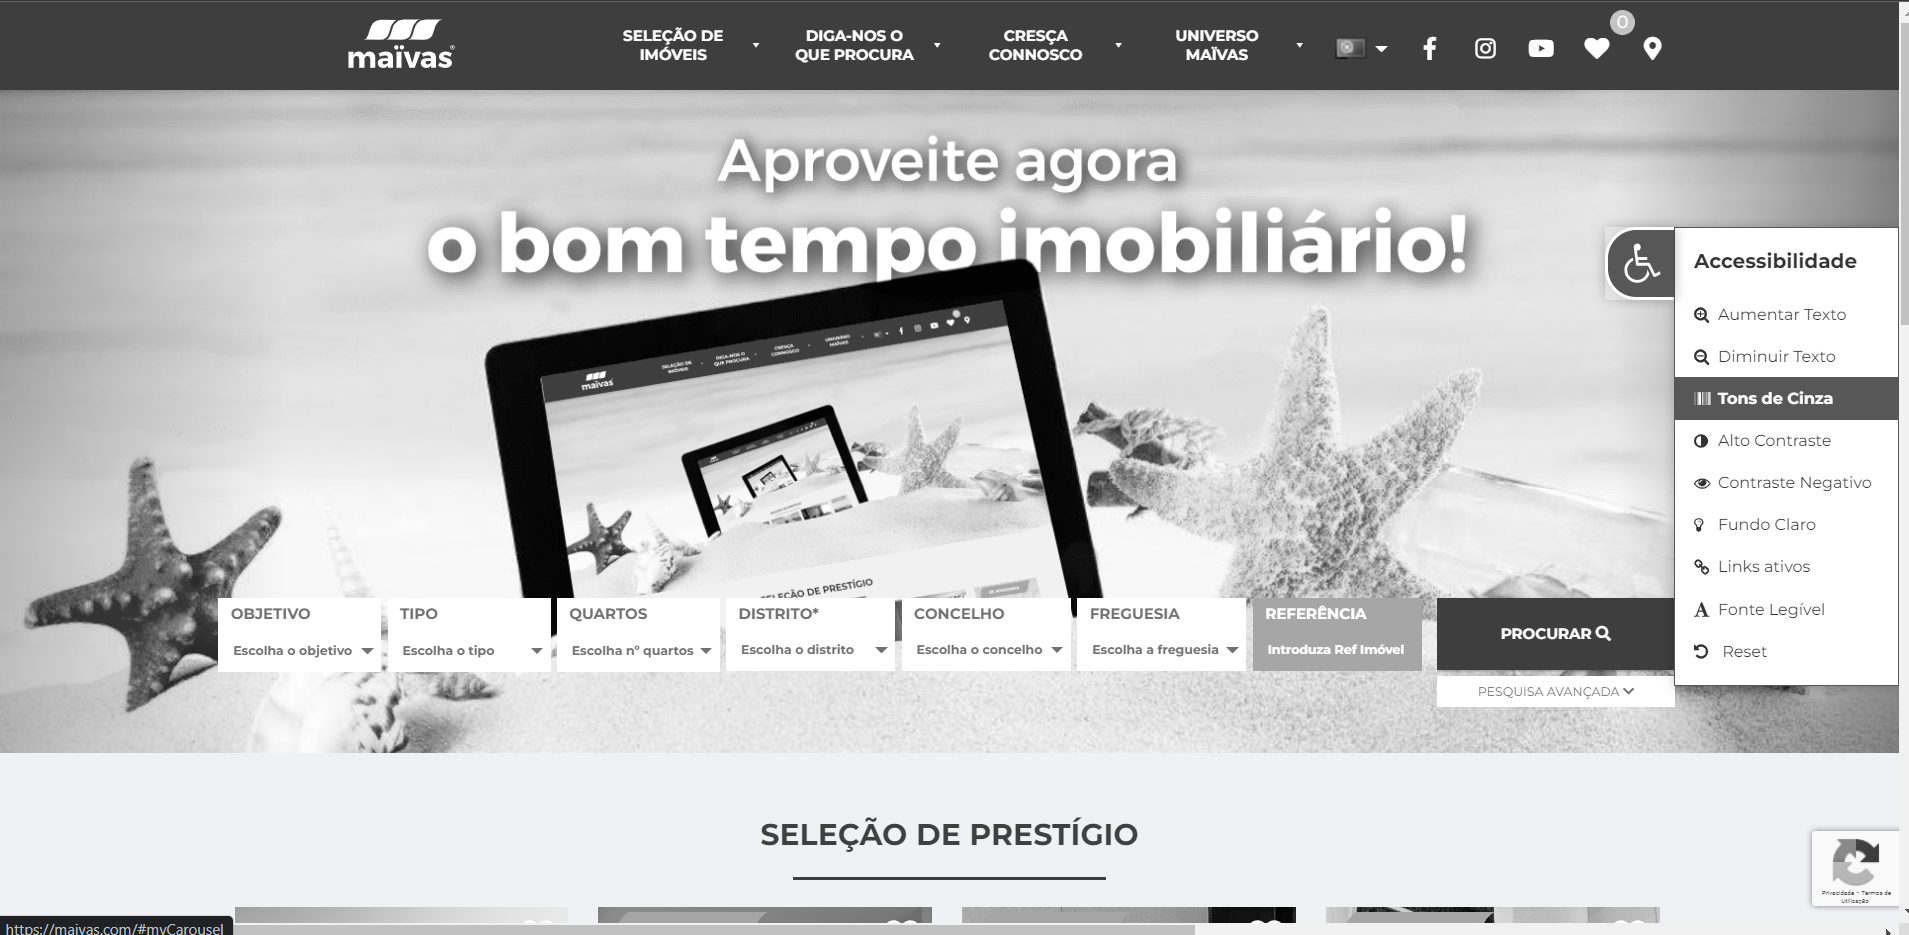 O primeiro website imobiliário inclusivo em Portugal